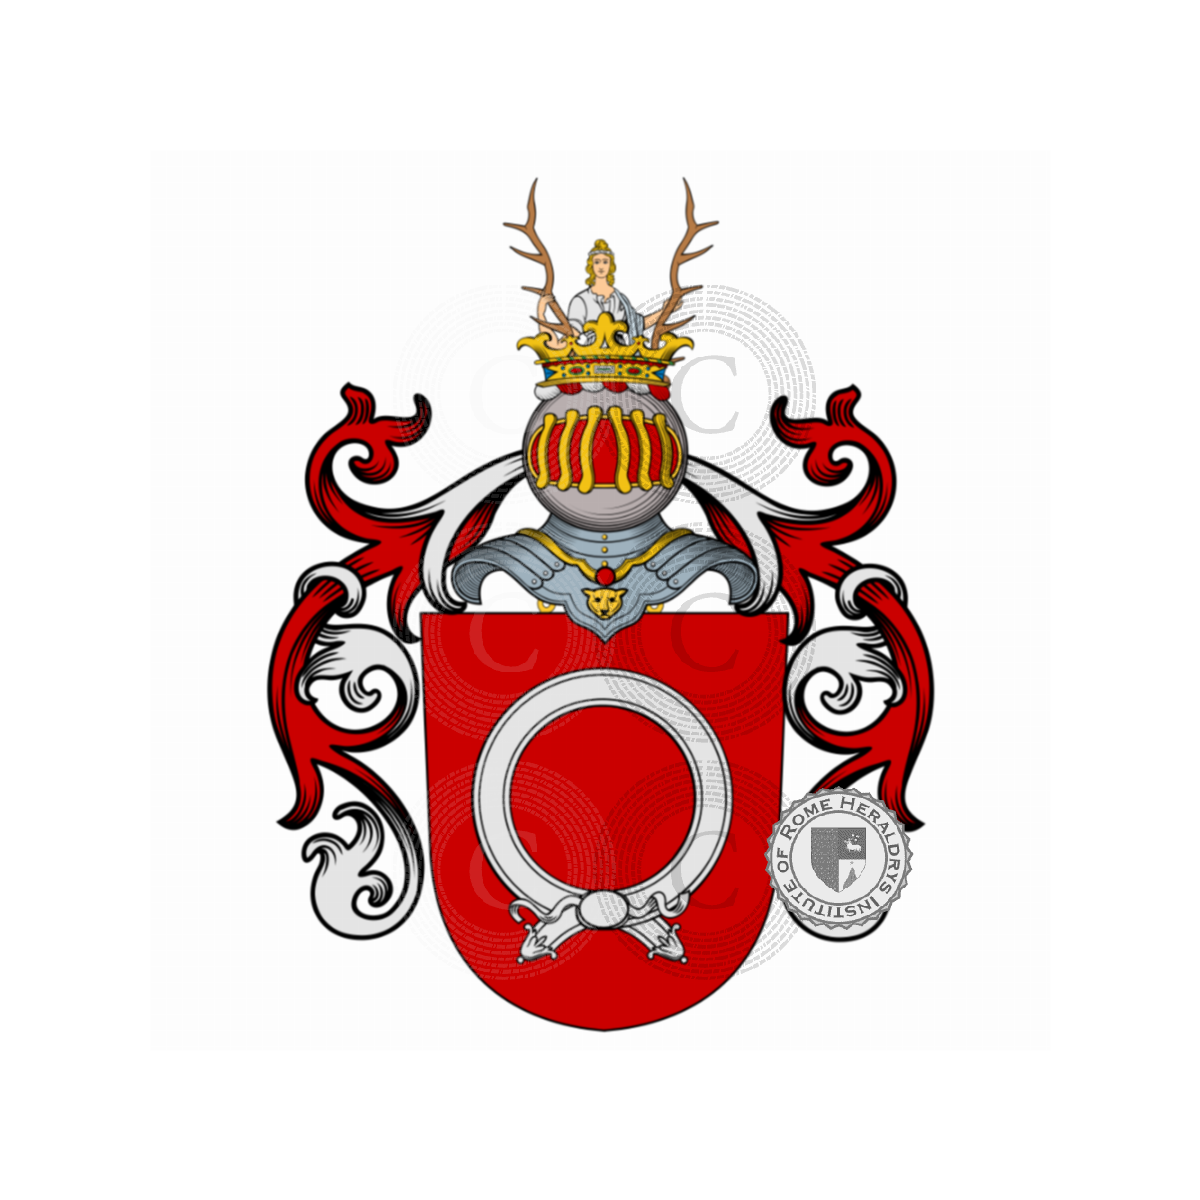 Escudo de la familiaBoccella, Boccella Ducloz